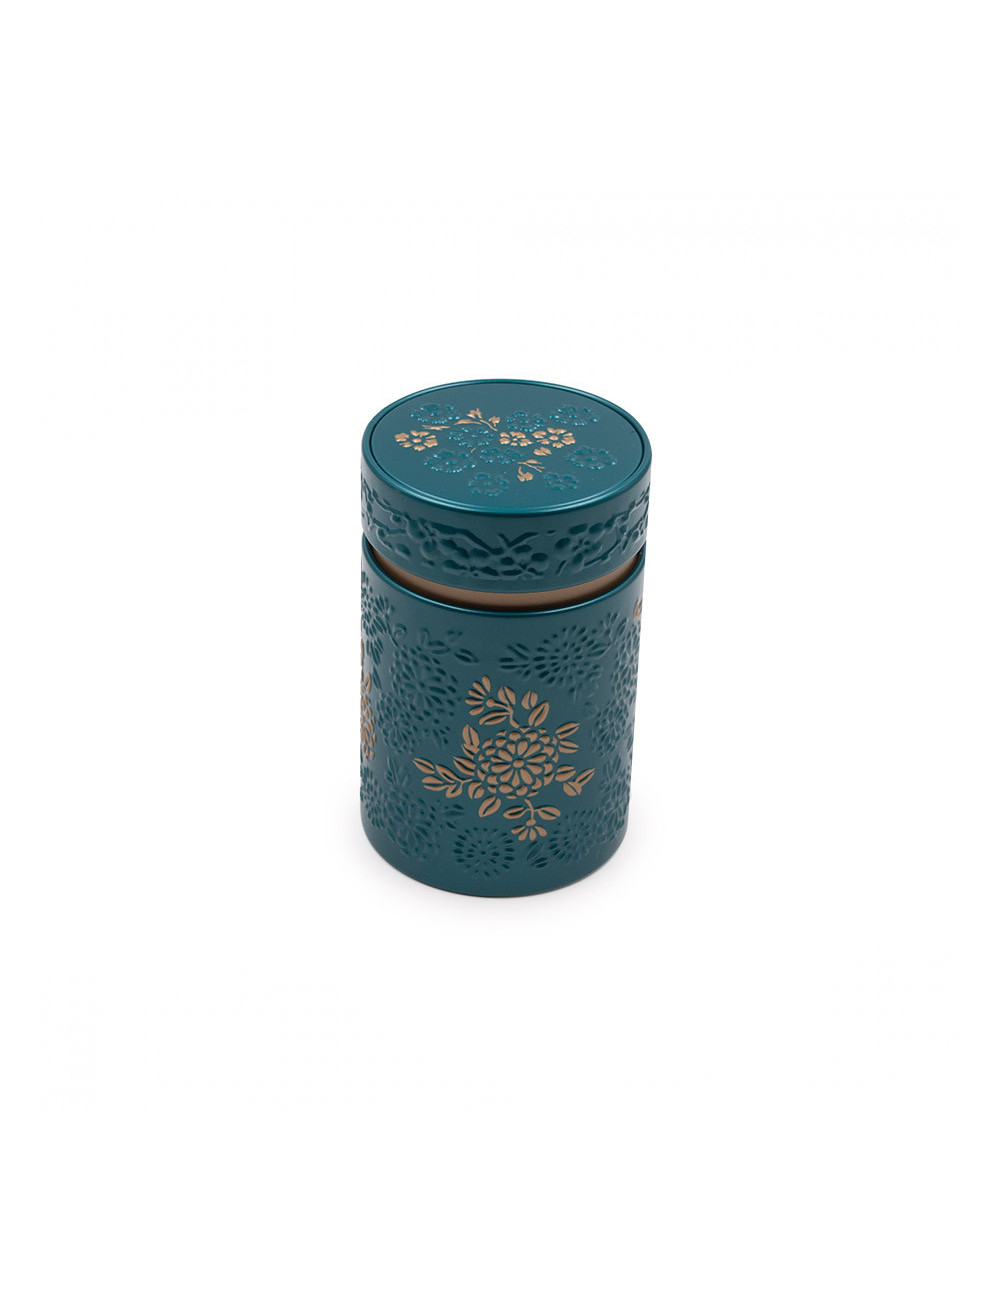 Bellissimo barattolo porta tè petrolio opaco con fiori a rilievo - La Pianta del Tè Vendita online